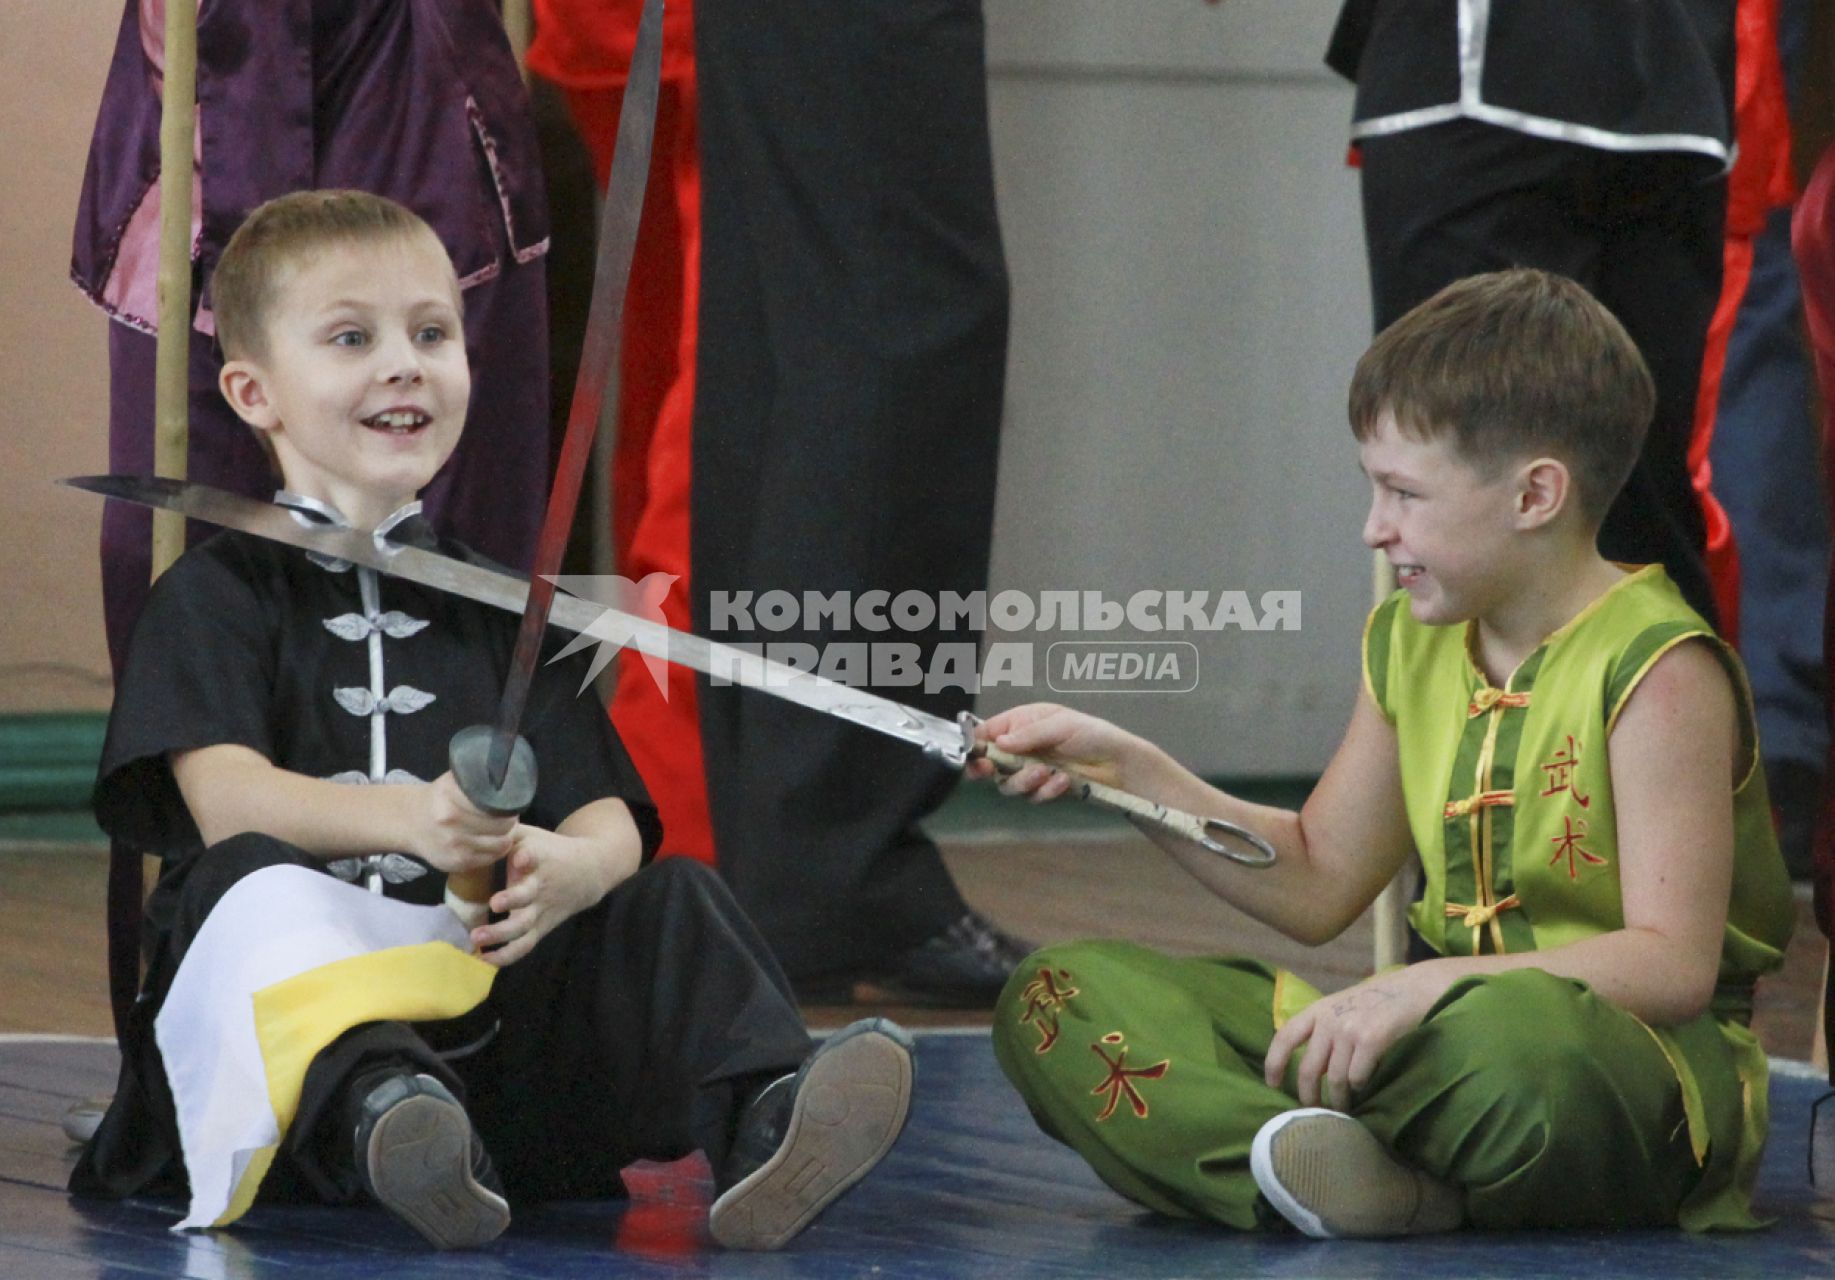 Открытый чемпионат и первенство Алтайского края по УШУ. Дети дурачатся перед соревнованиями.